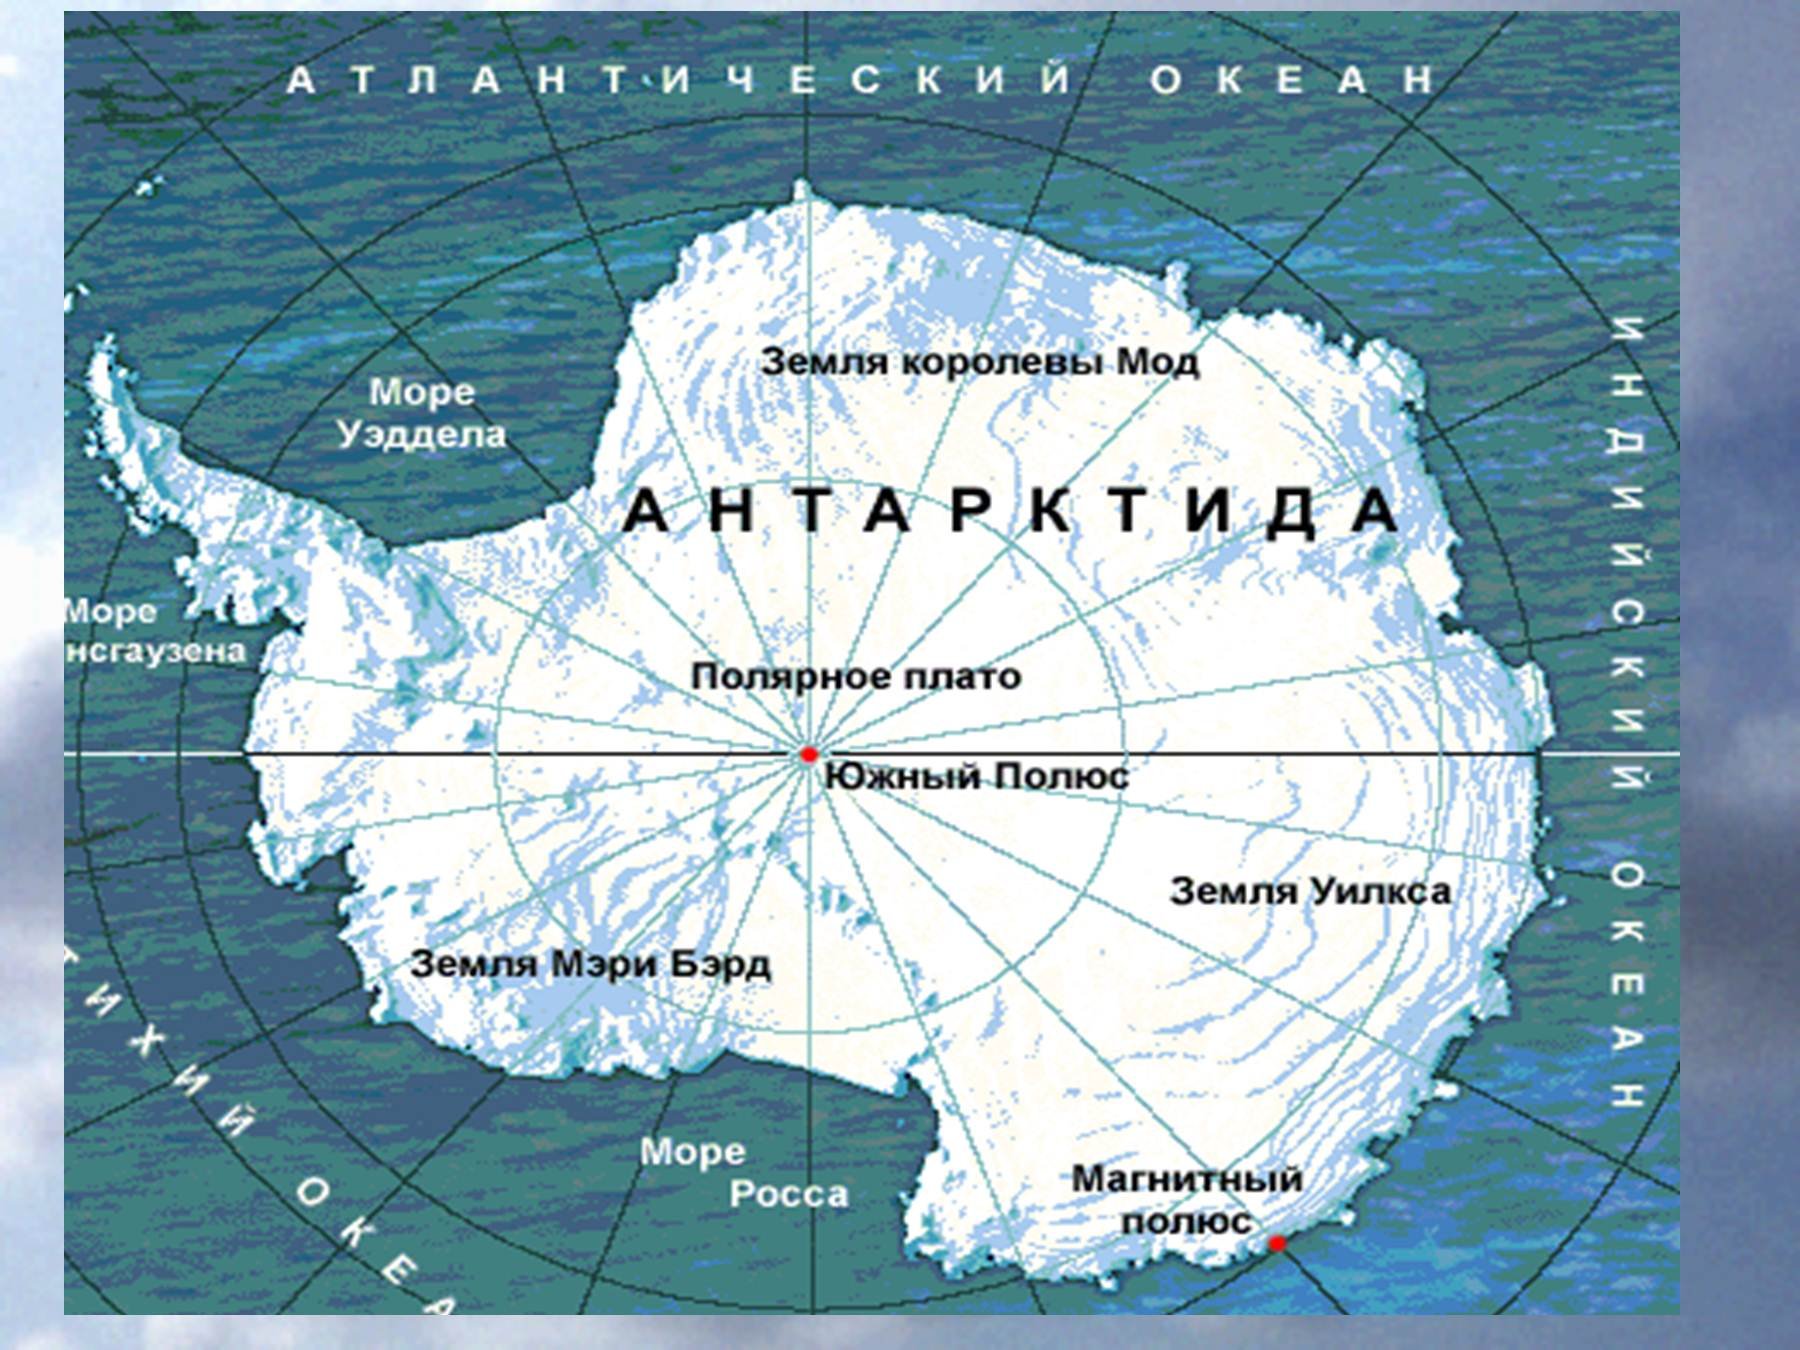 Материк расположенный в южном океане. Карта Антарктиды моря омывающие Антарктиду. Антарктида моря Росса Уэдделла Беллинсгаузена Амундсена. Моря: Амундсена, Беллинсгаузена, Росса, Уэдделла..